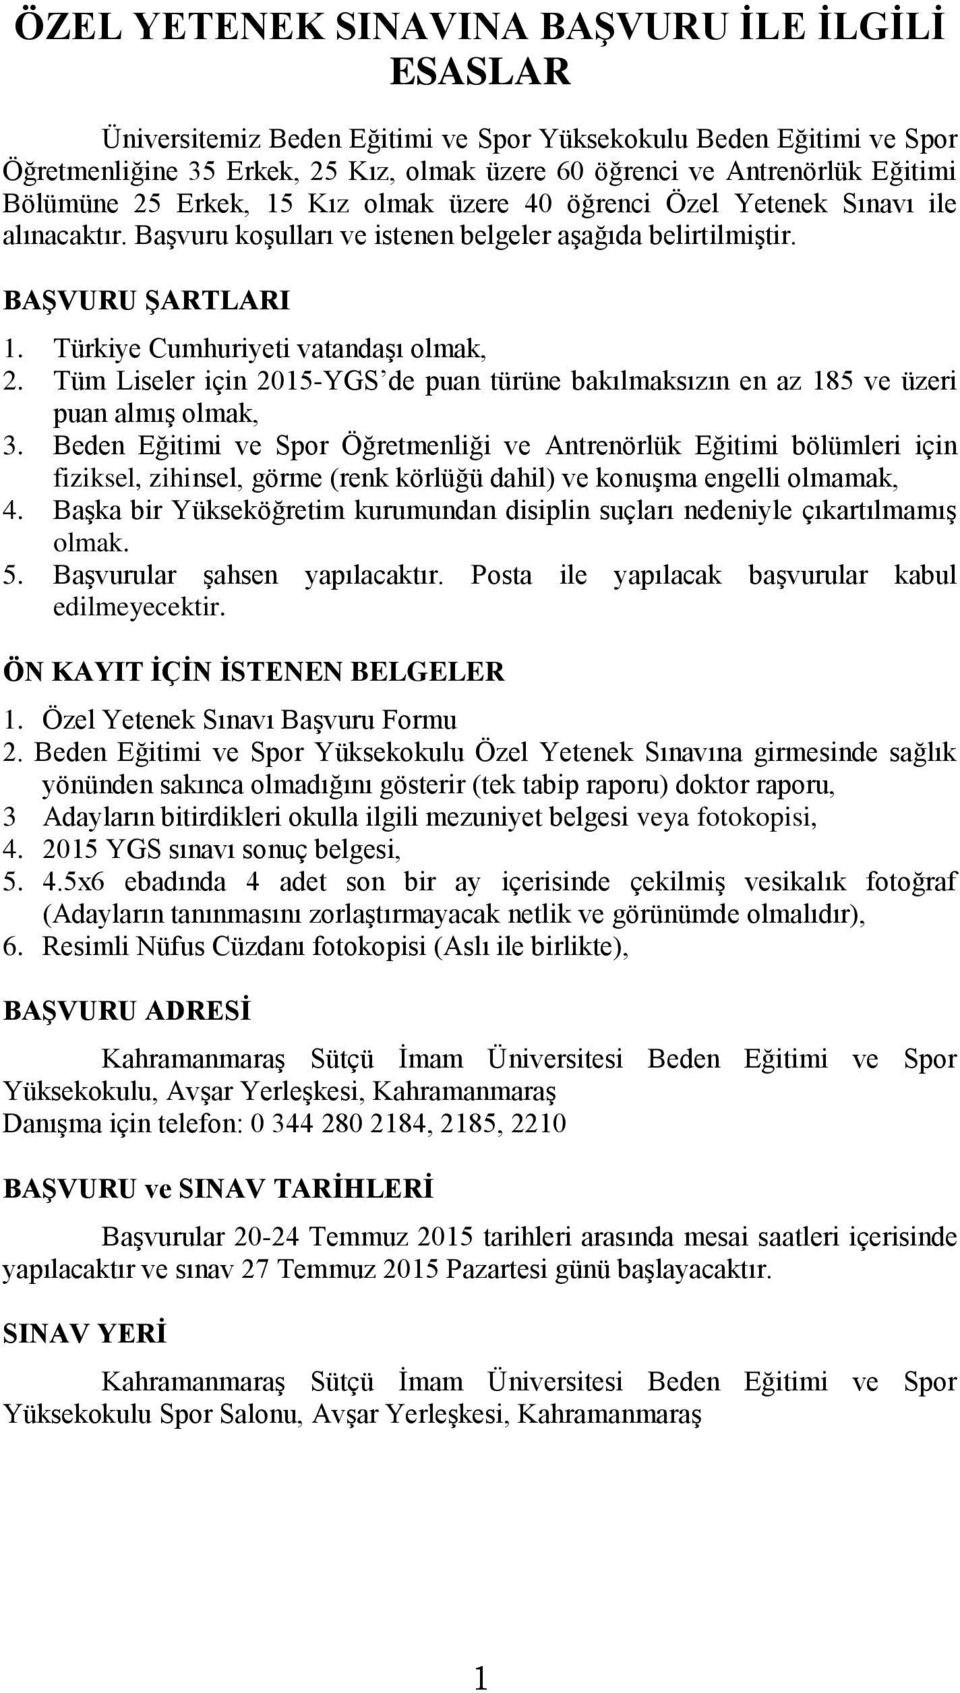 Türkiye Cumhuriyeti vatandaşı olmak, 2. Tüm Liseler için 2015-YGS de puan türüne bakılmaksızın en az 185 ve üzeri puan almış olmak, 3.